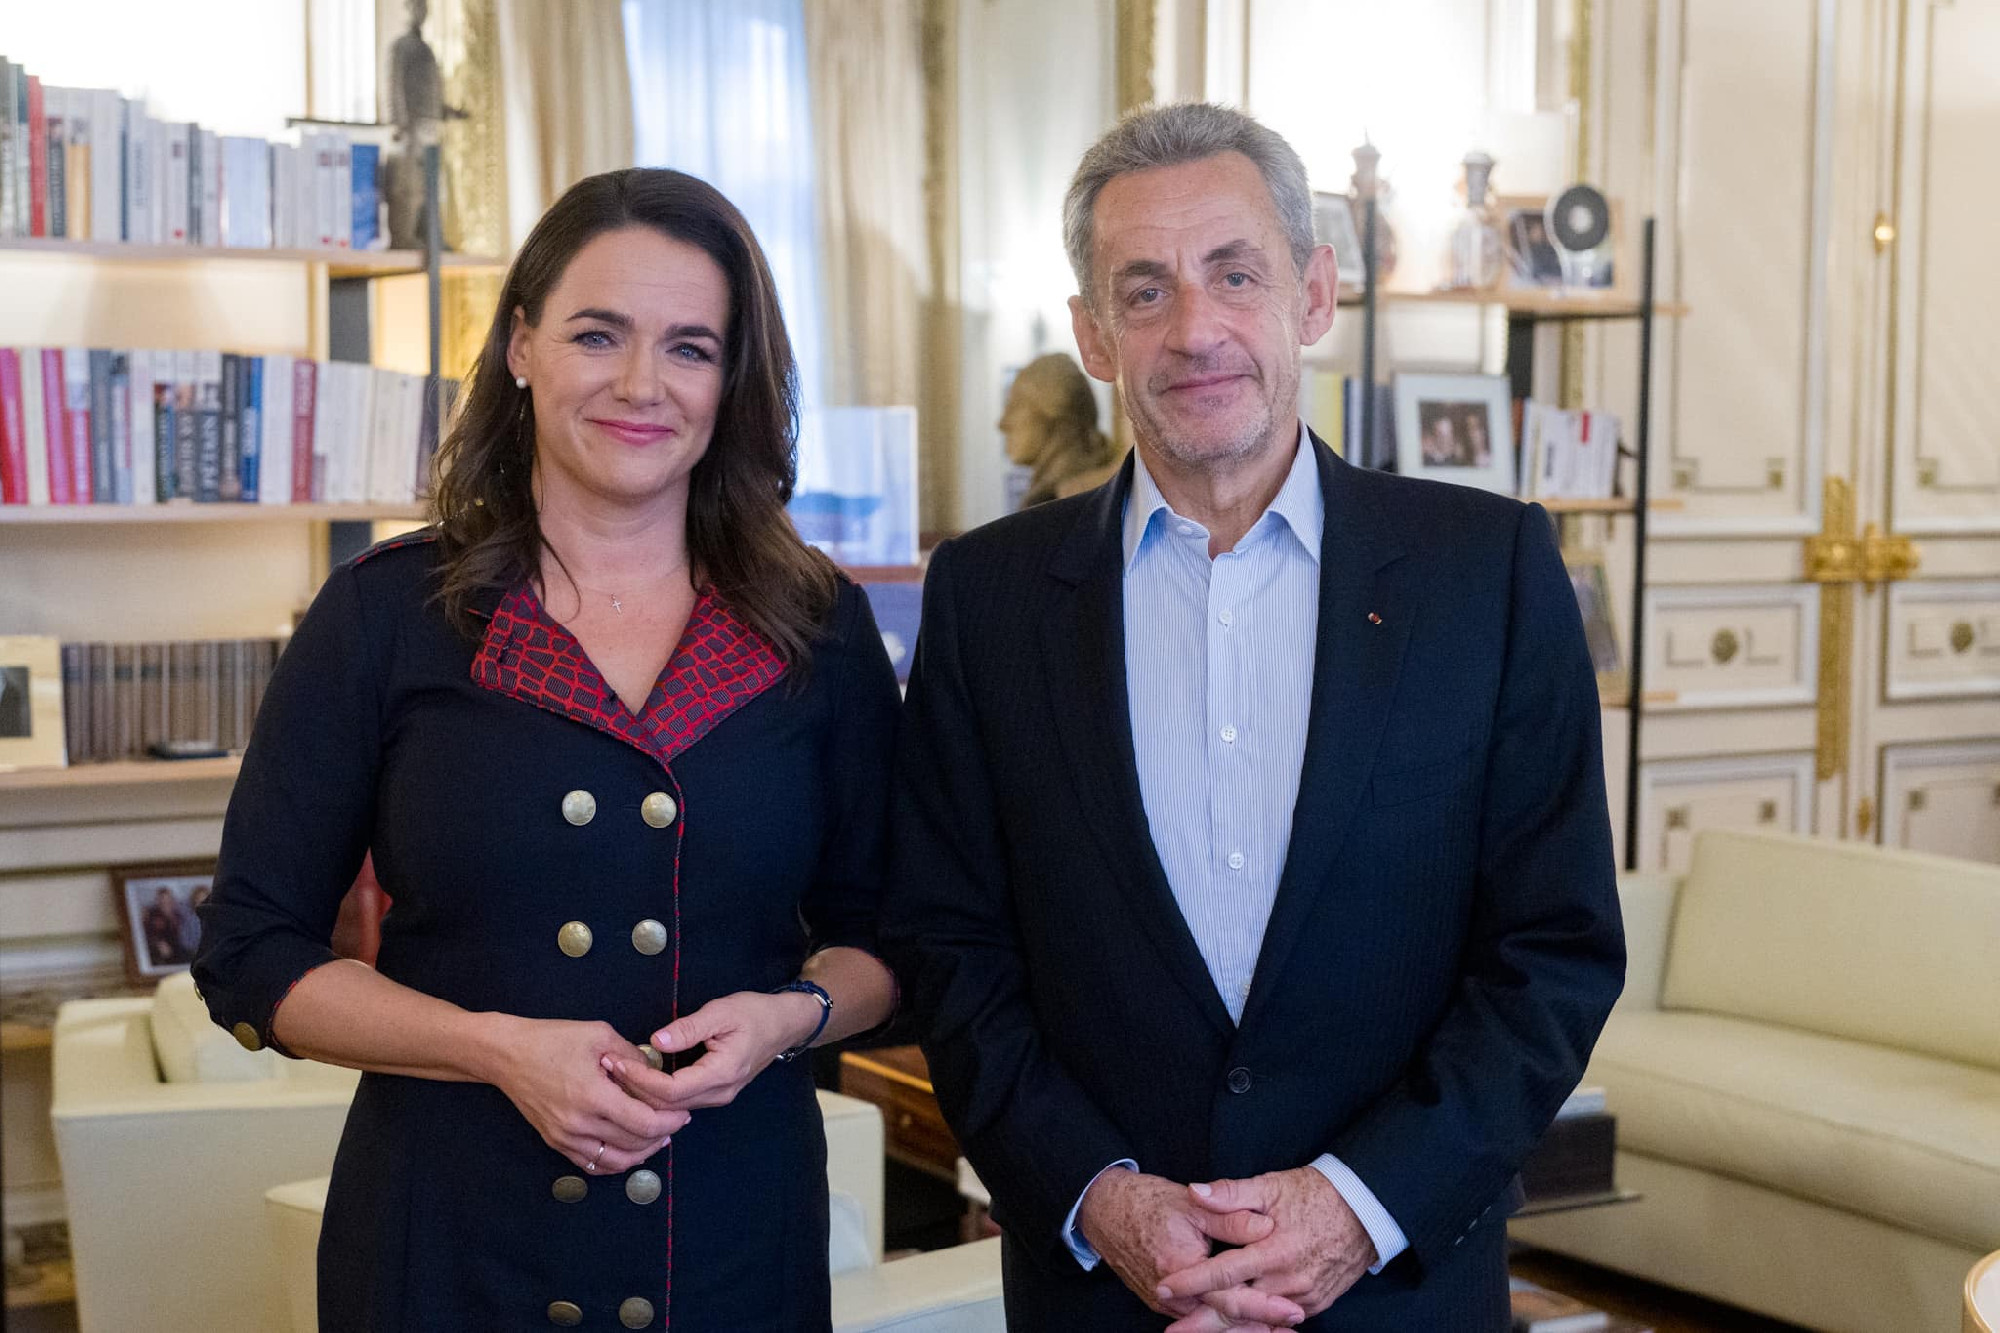 Békefórumra utazott Novák Katalin, találkozott Sarkozyvel is